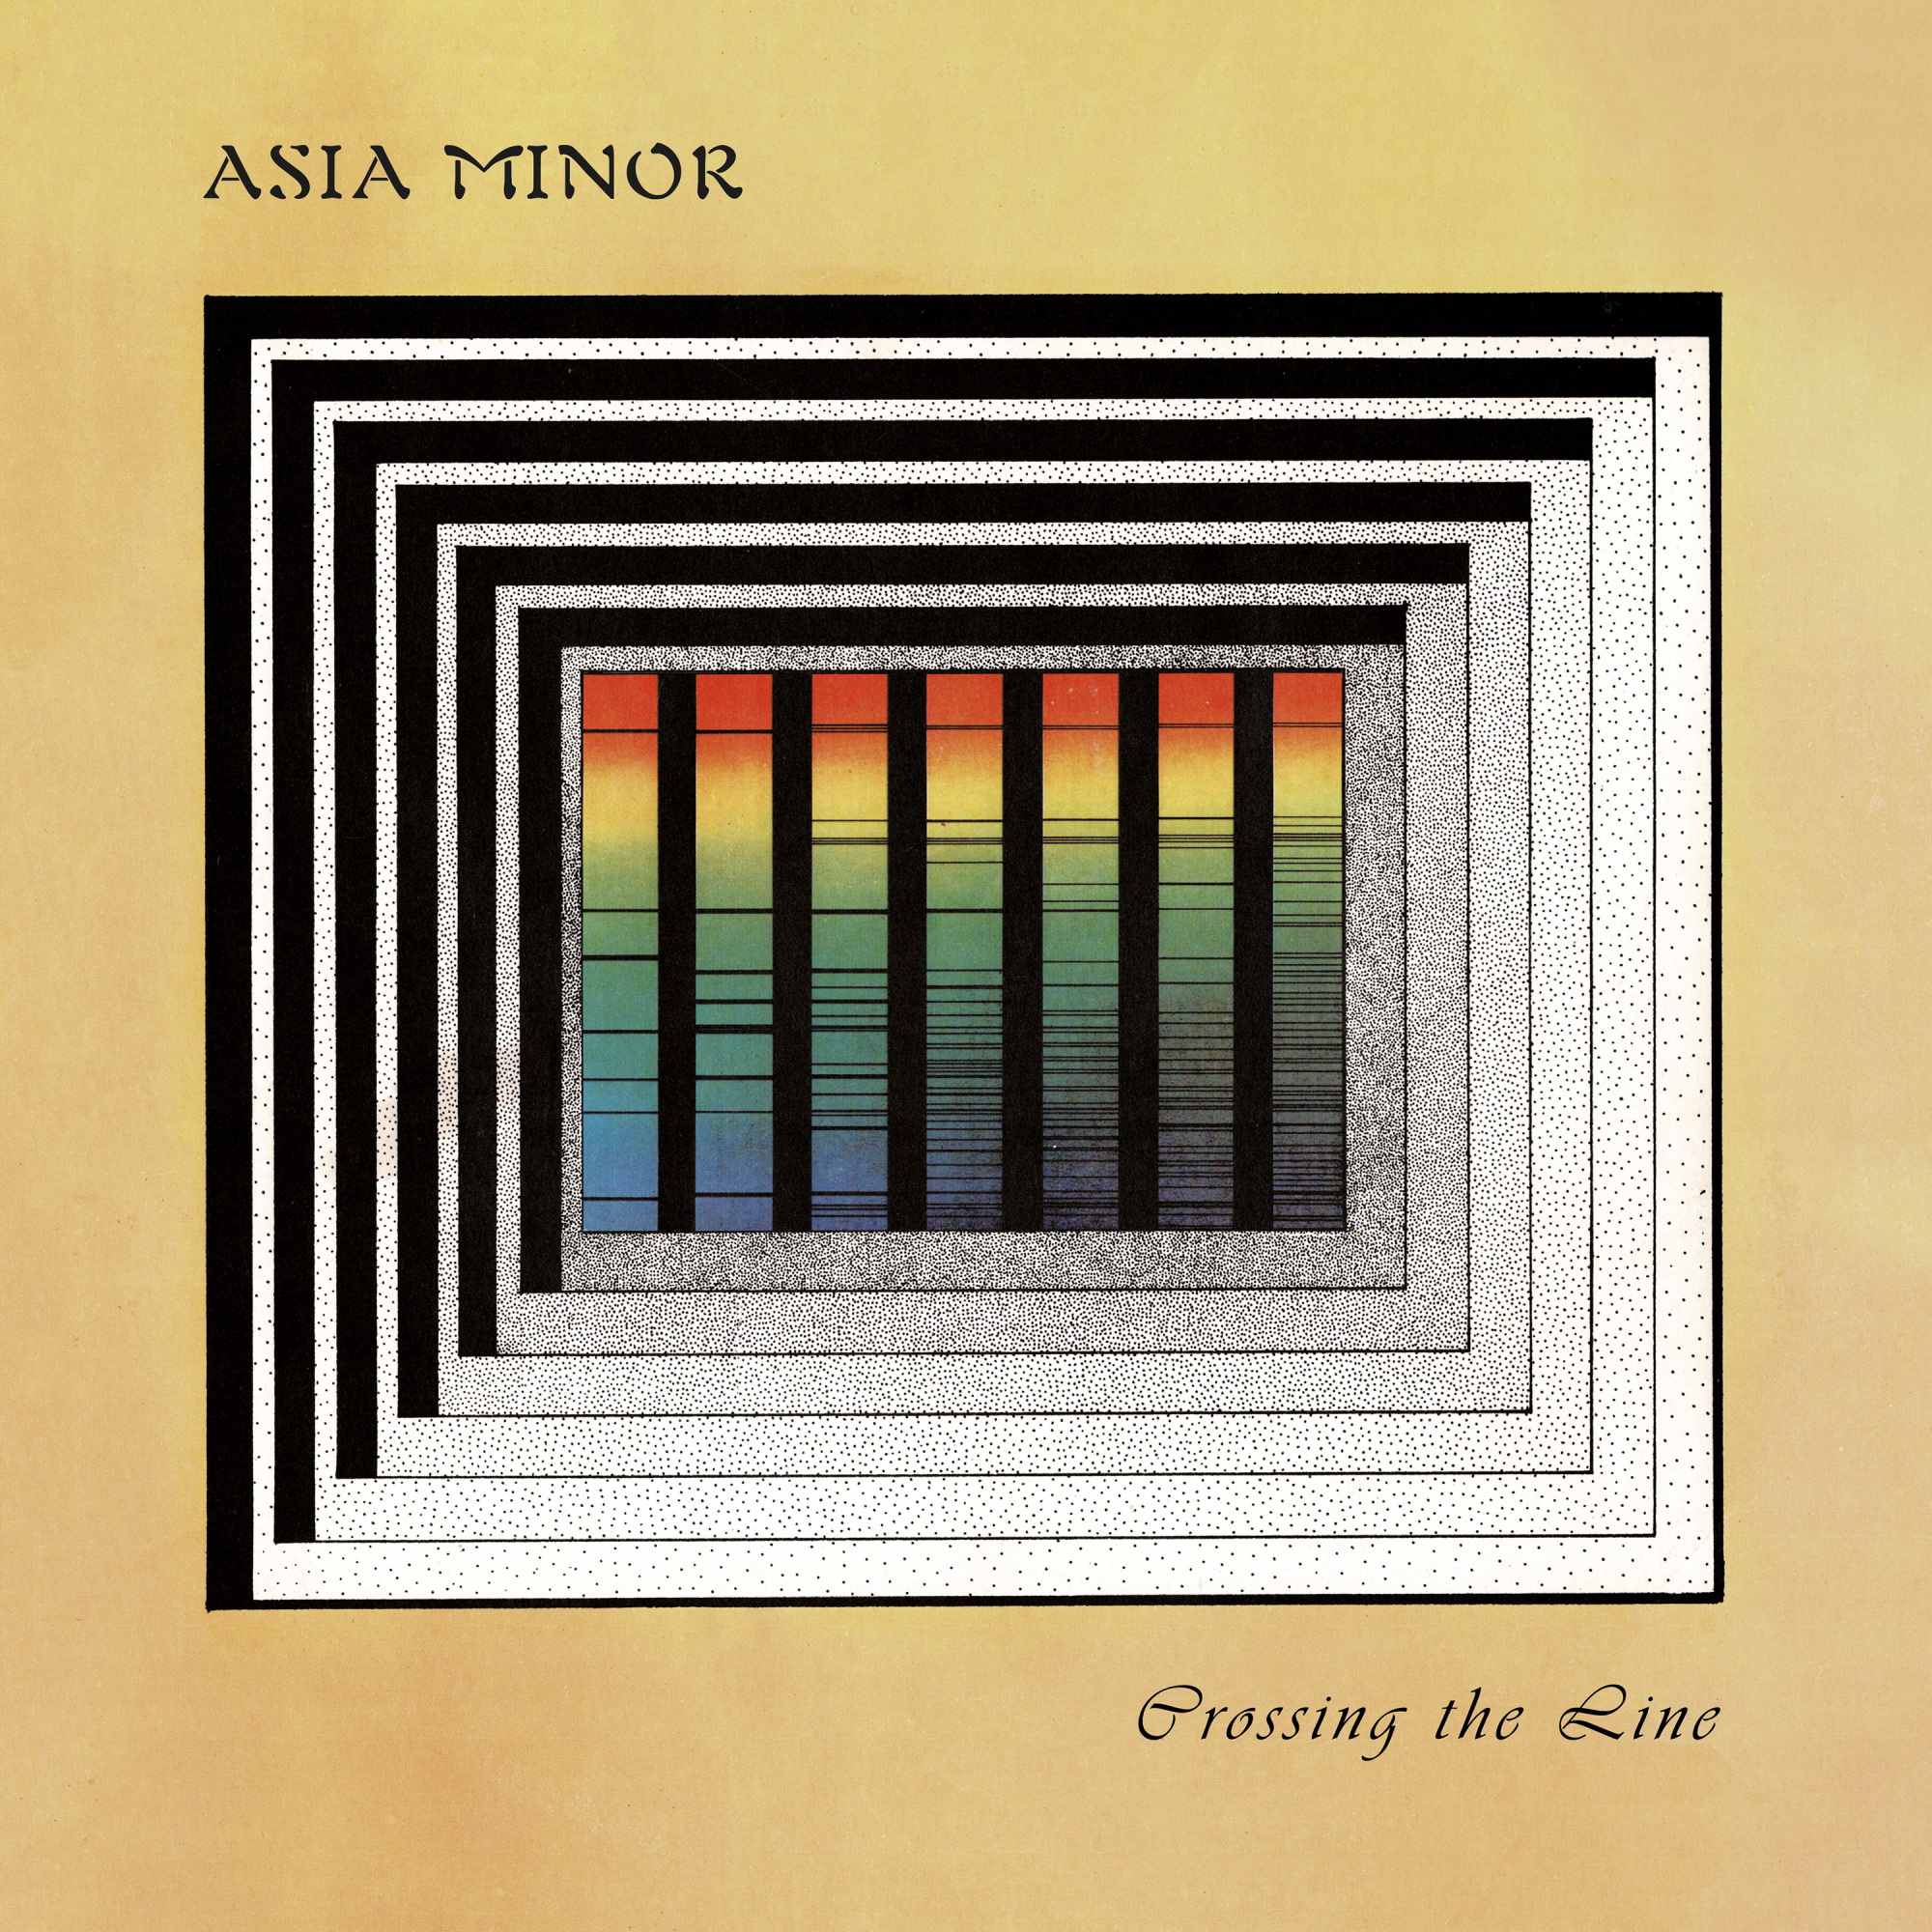 Vinile Asia Minor - Crossing The Line Ltd. Vinyl NUOVO SIGILLATO EDIZIONE DEL SUBITO DISPONIBILE giallo